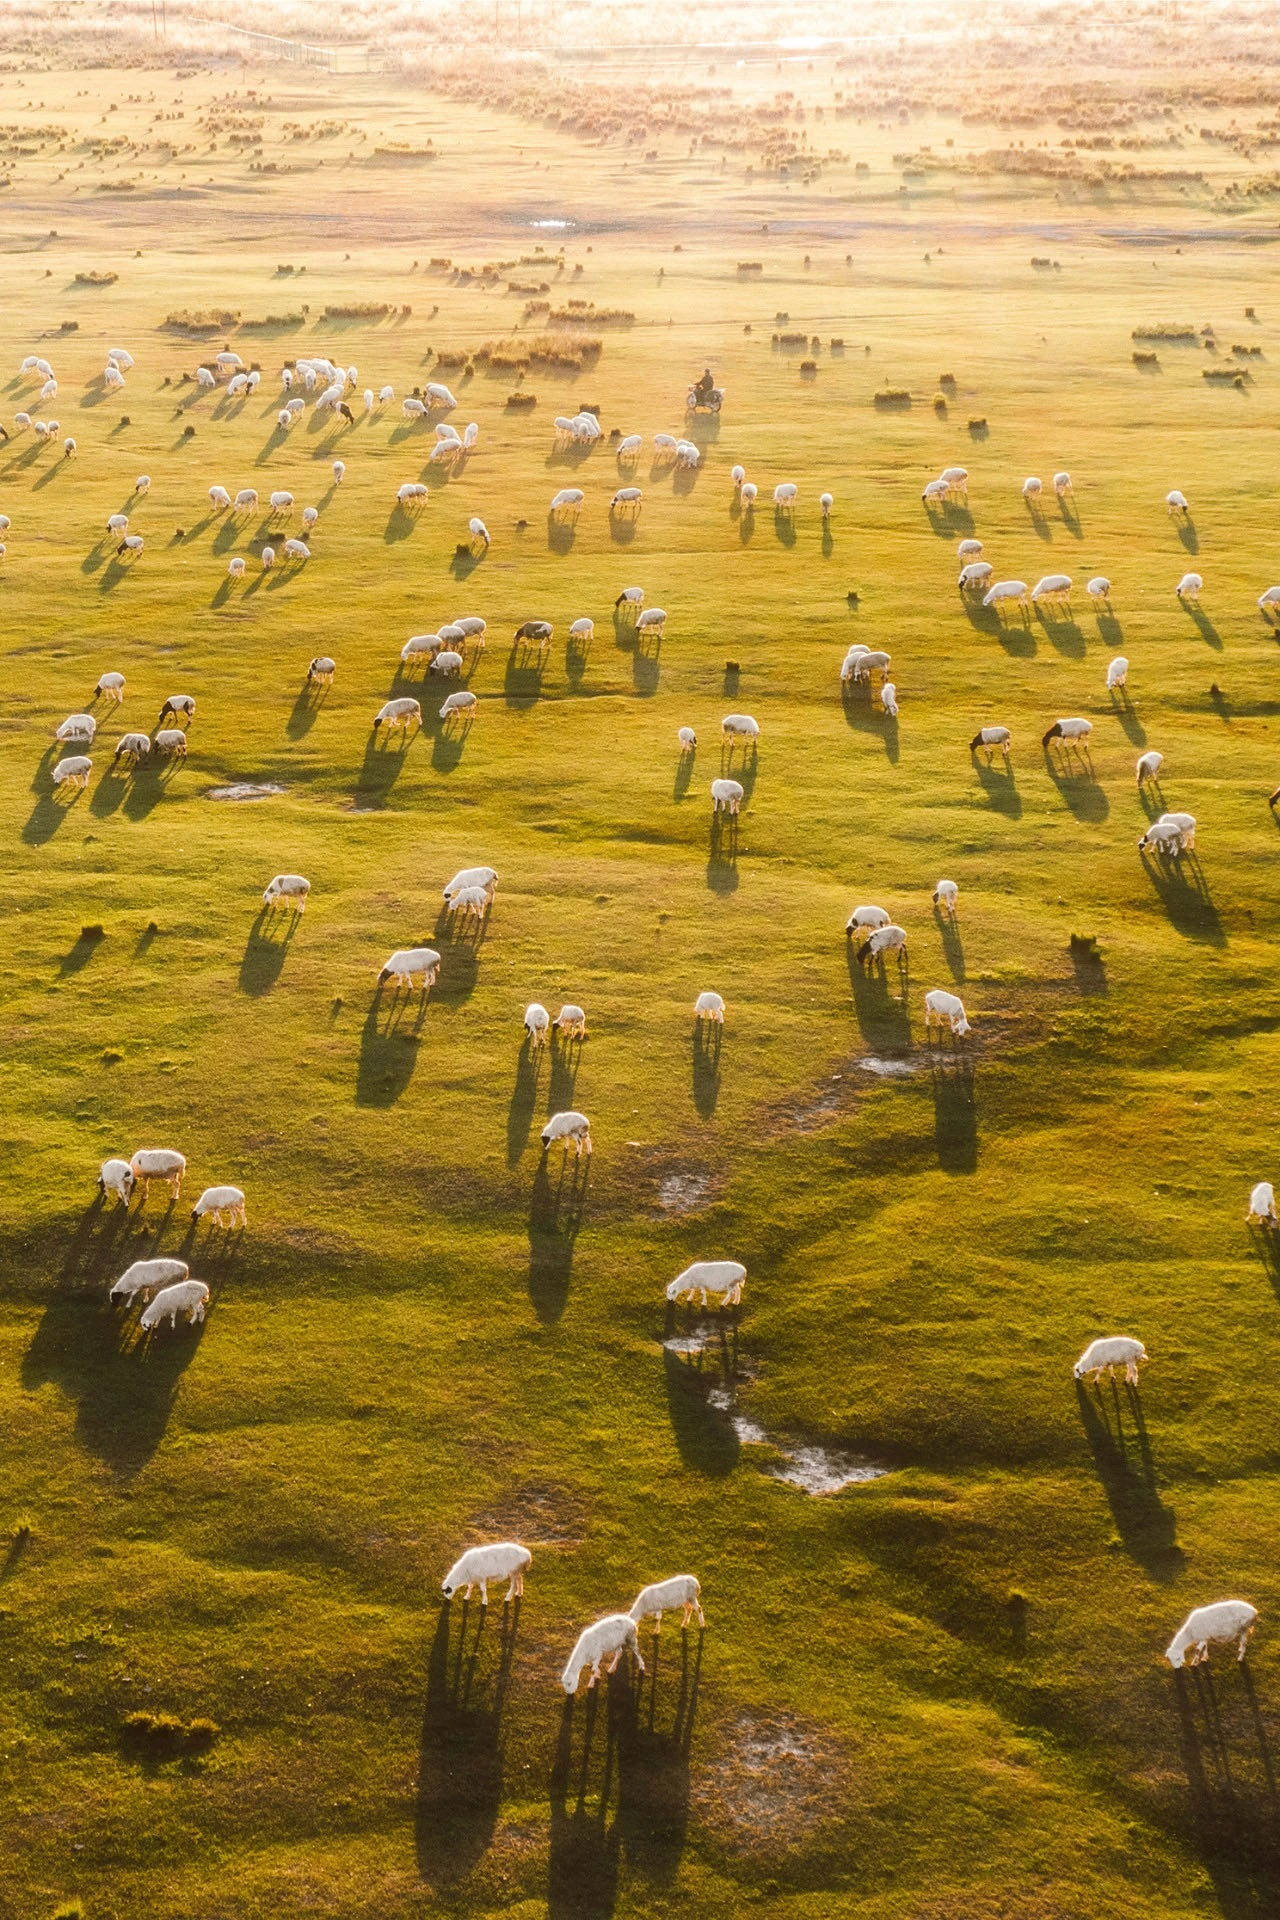 乌珠穆沁草原是位于锡林郭勒东北部的典型温带草原, 素有"草甸子"的